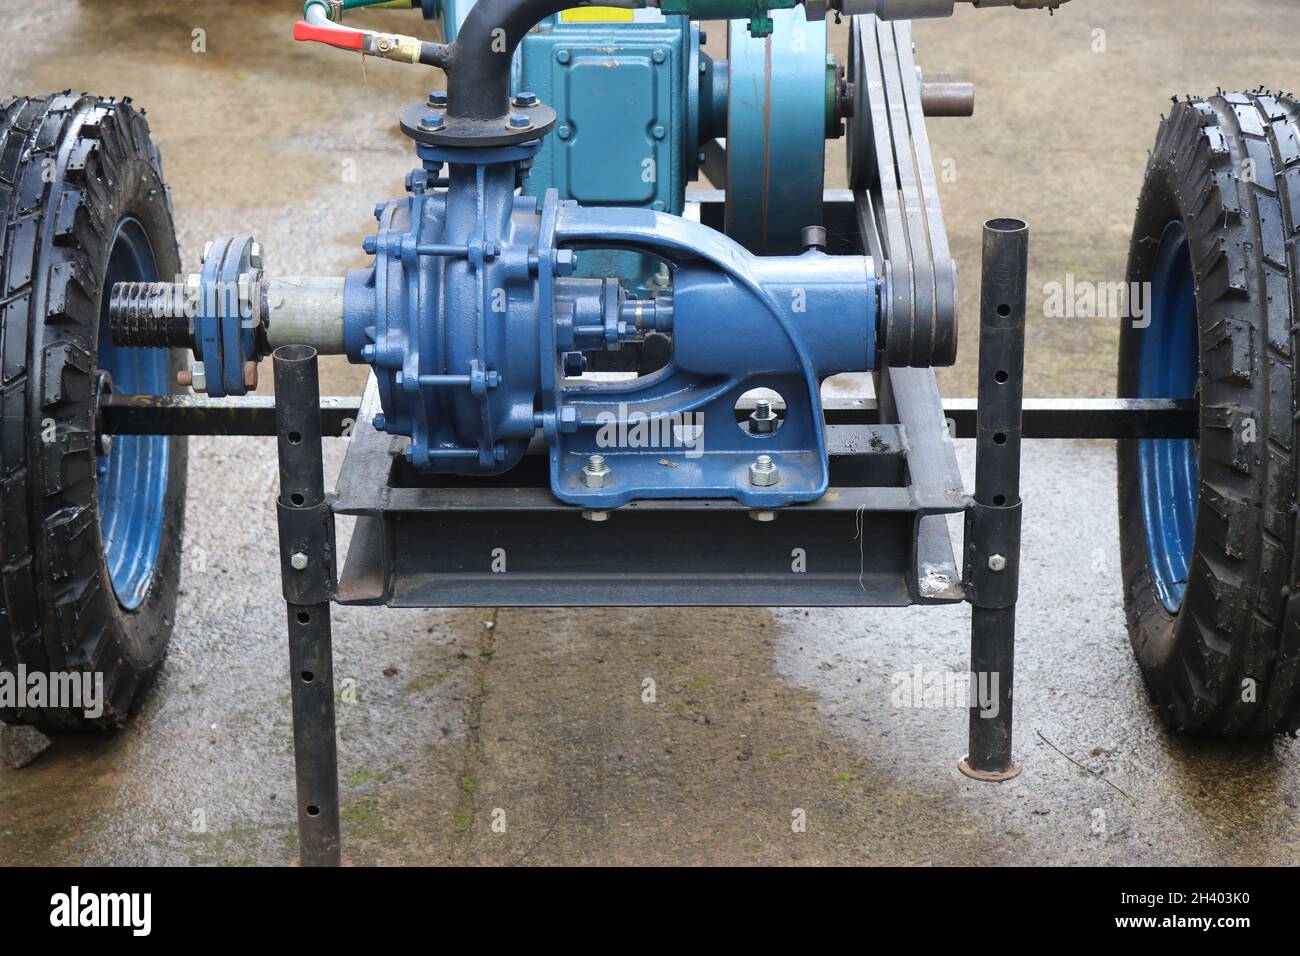 Pompe à eau diesel avec entraînement par courroie, kit de pompe à eau à usage intensif avec support pour l'irrigation agricole Banque D'Images